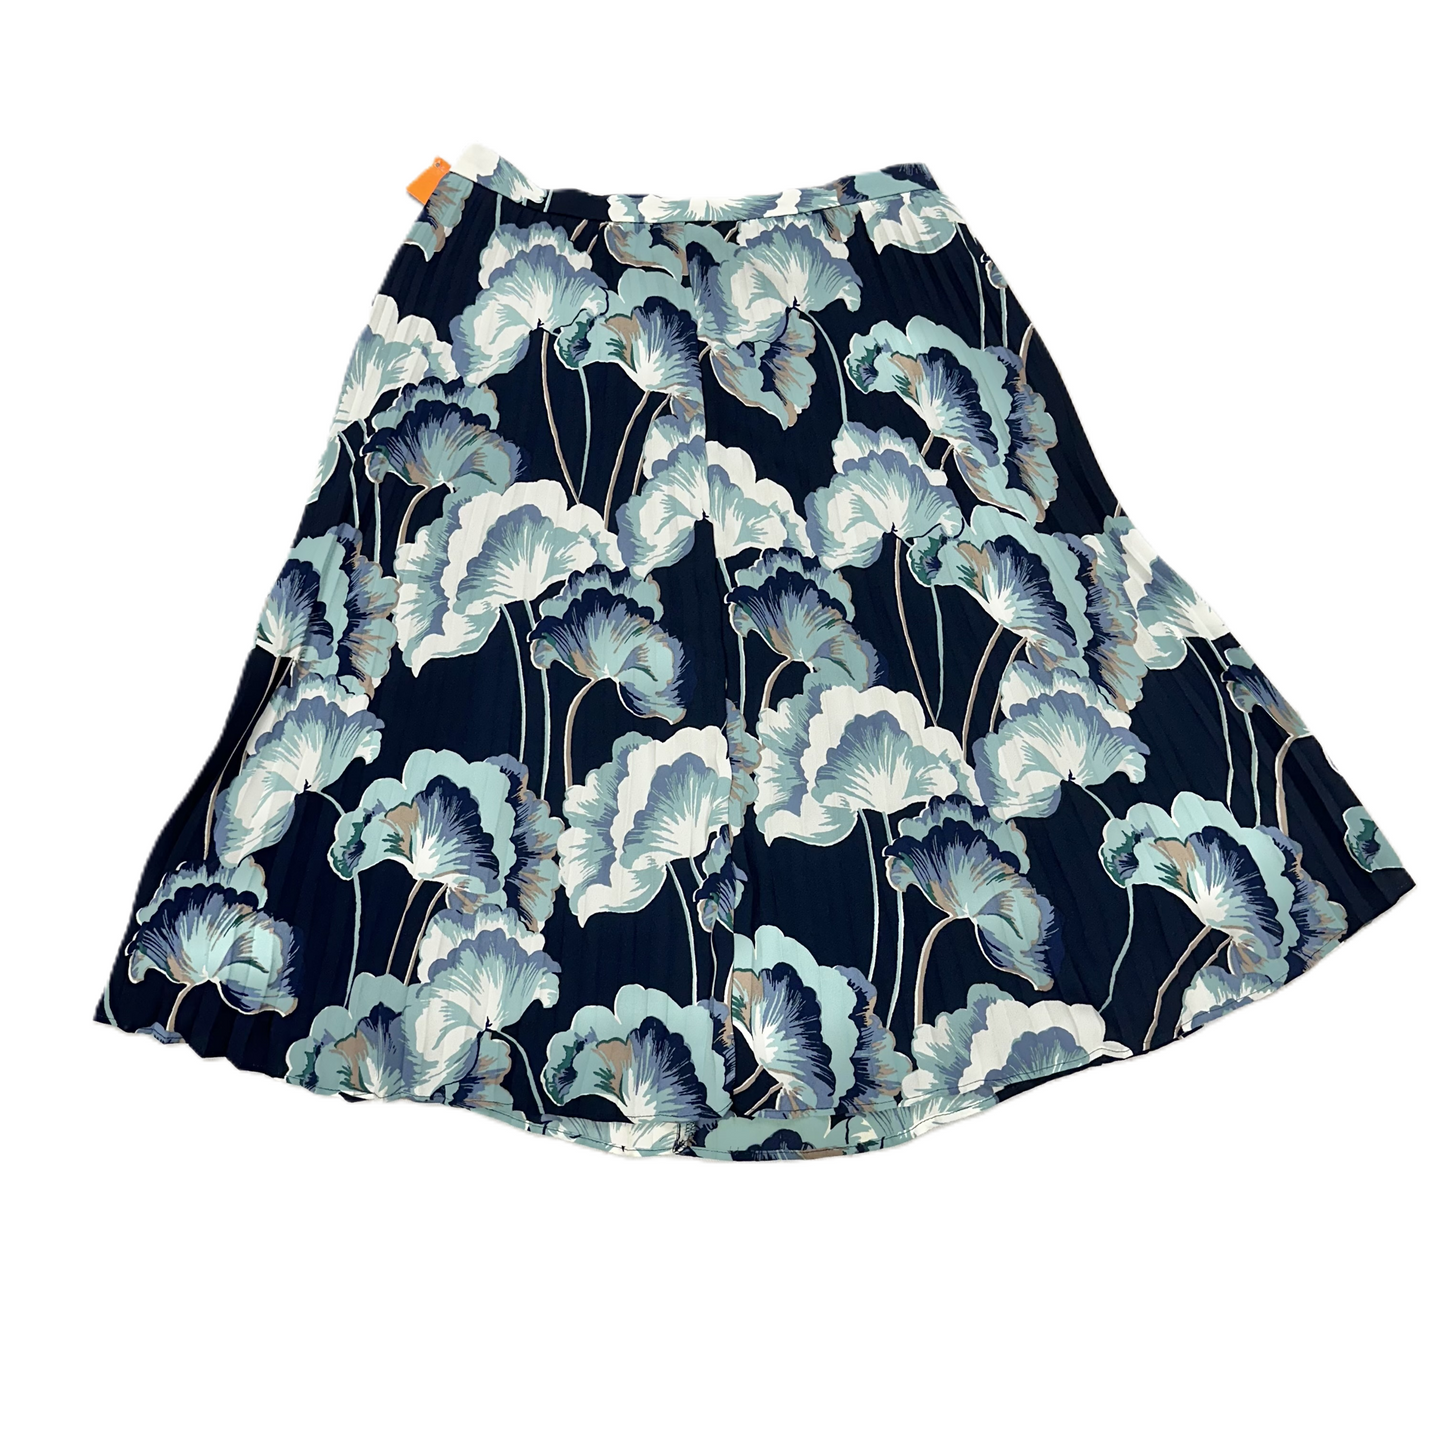 Floral Print Skirt Midi By Ann Taylor, Size: 4petite